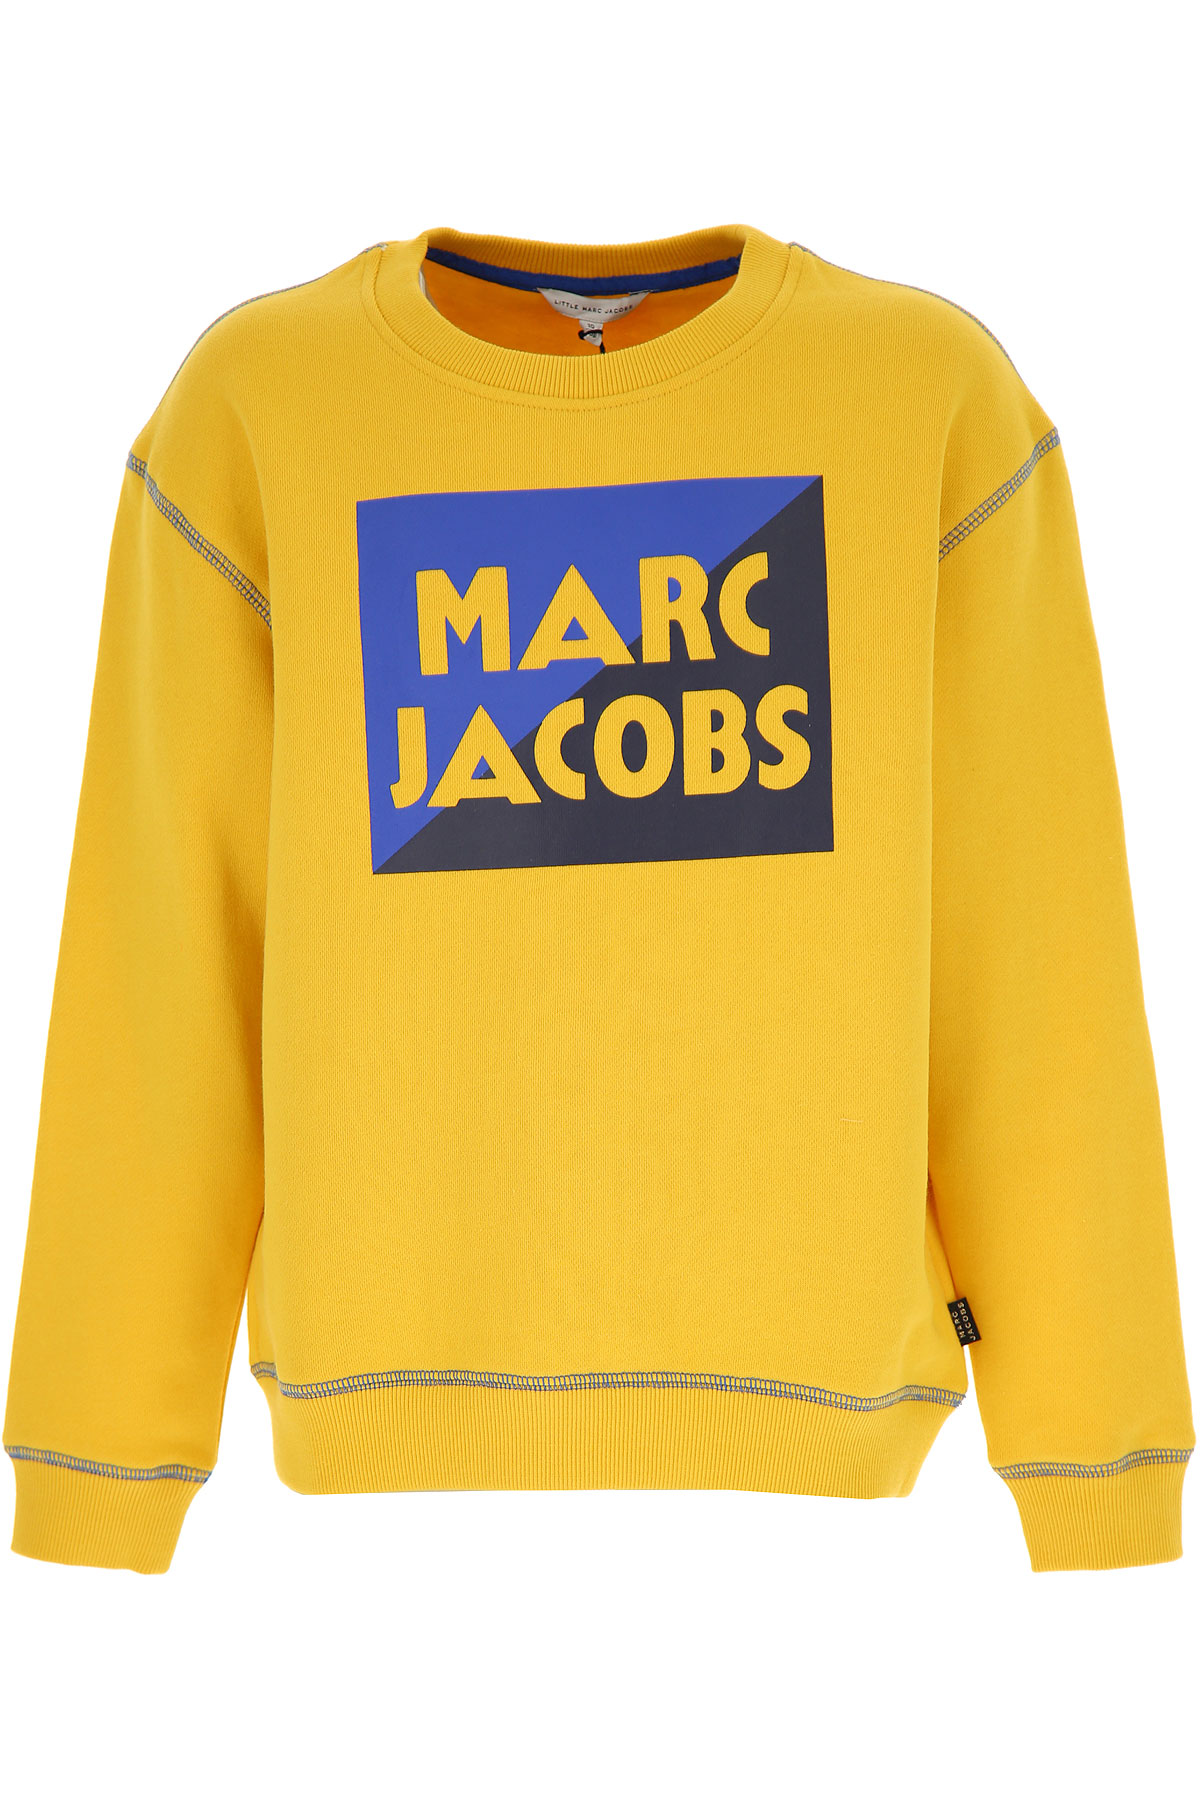 Marc Jacobs Kinder Sweatshirt & Kapuzenpullover für Jungen Günstig im Sale, Gelb, Baumwolle, 2017, 10Y 12Y 14Y 2Y 3Y 4Y 5Y 6Y 8Y